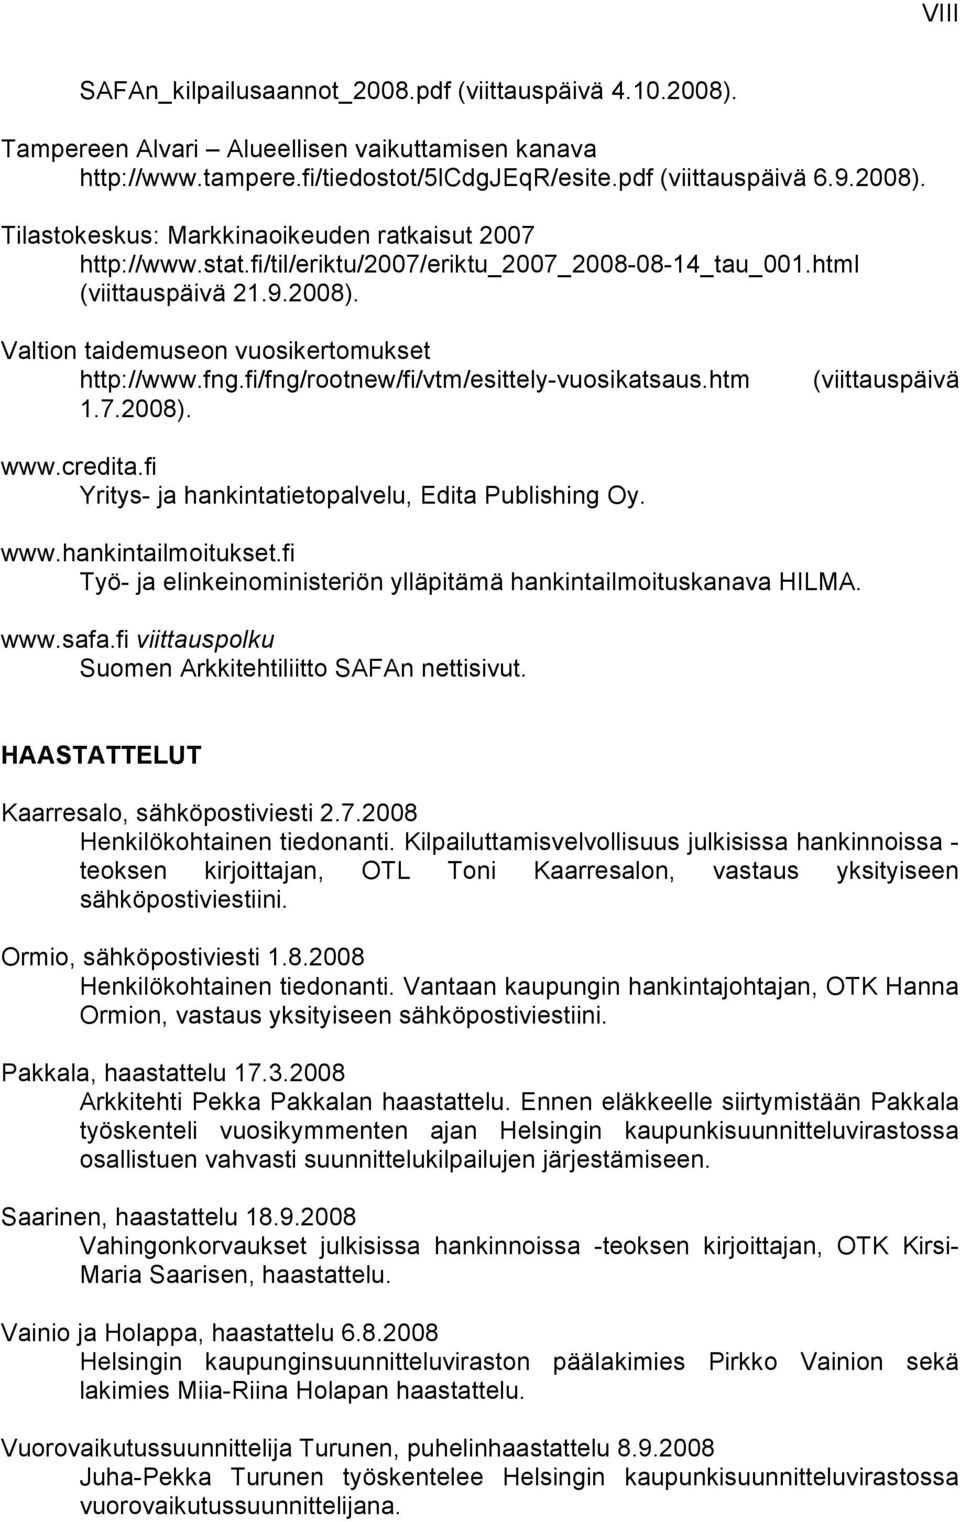 credita.fi Yritys- ja hankintatietopalvelu, Edita Publishing Oy. www.hankintailmoitukset.fi Työ- ja elinkeinoministeriön ylläpitämä hankintailmoituskanava HILMA. www.safa.